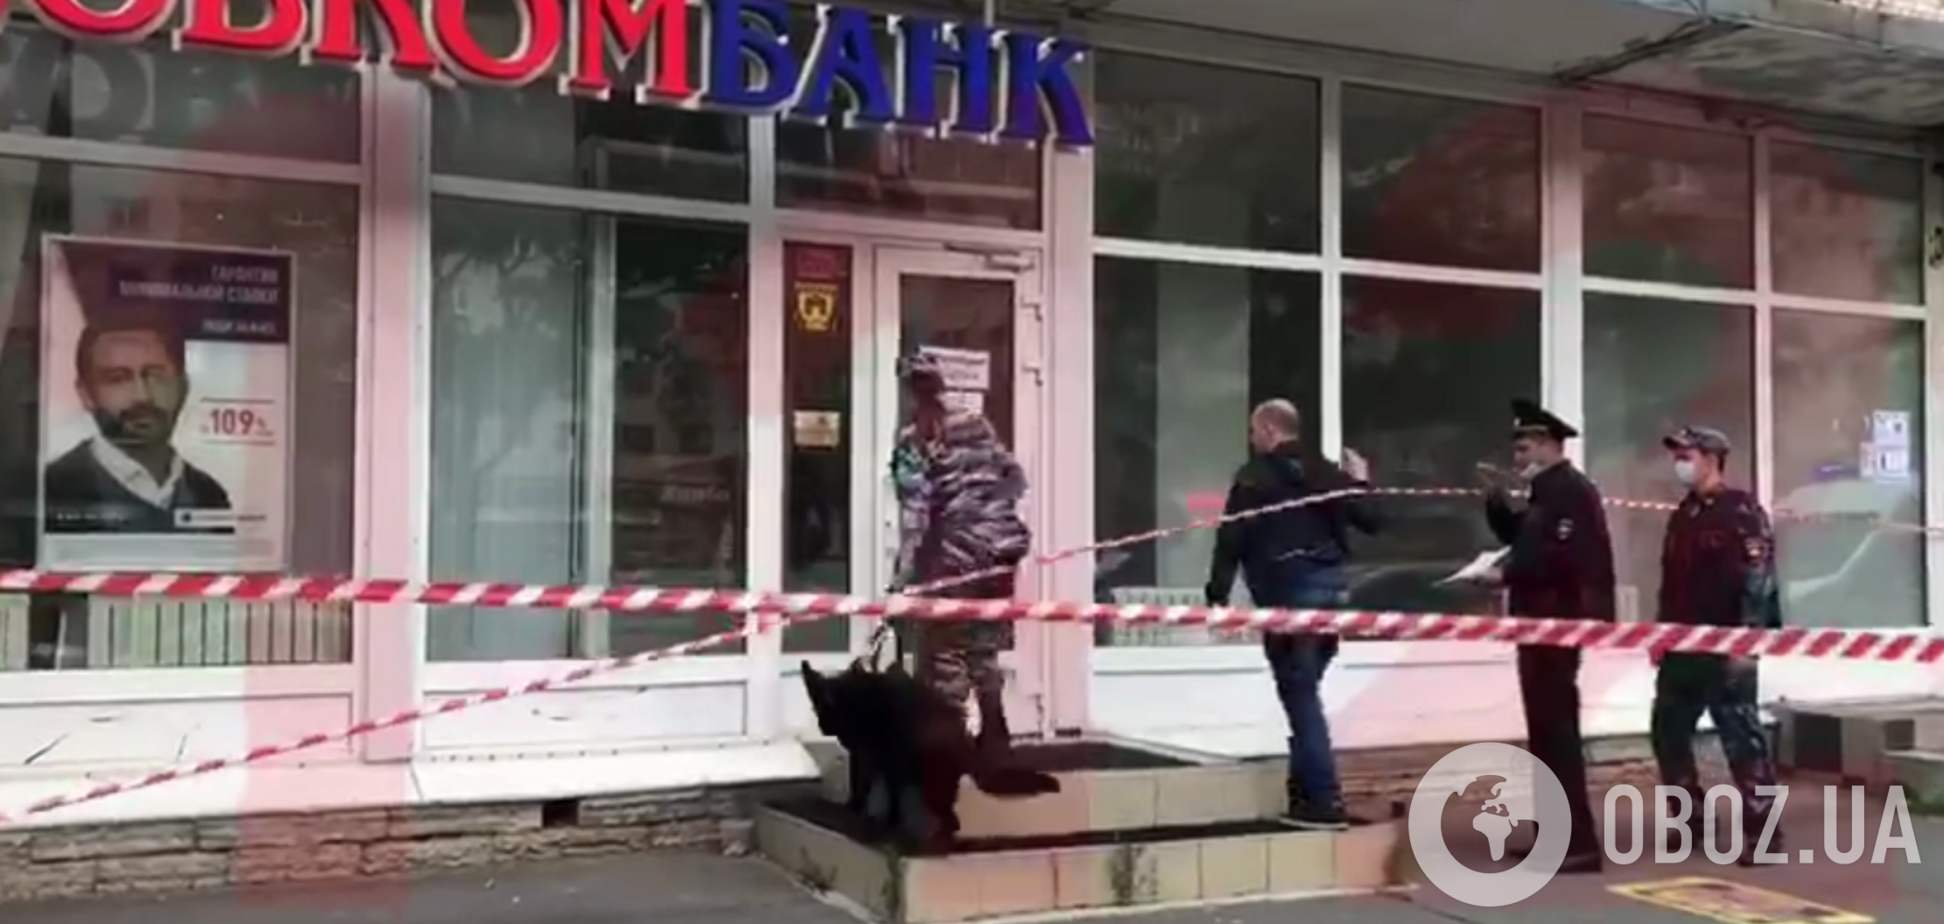 Росіянин 'обчистив' банк на 4 млн і зник. Відео